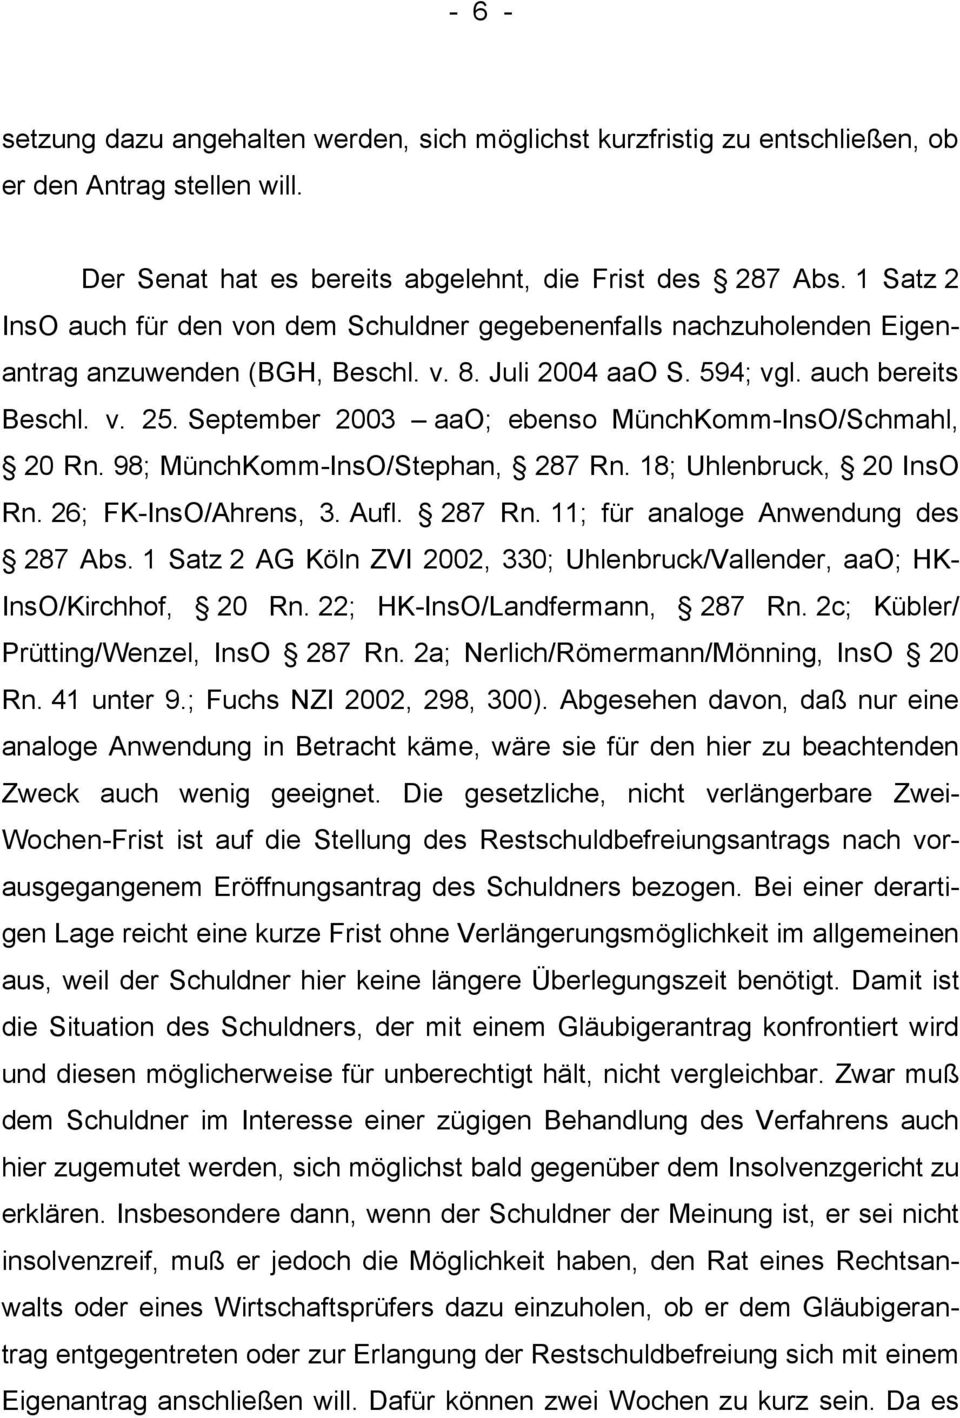 September 2003 aao; ebenso MünchKomm-InsO/Schmahl, 20 Rn. 98; MünchKomm-InsO/Stephan, 287 Rn. 18; Uhlenbruck, 20 InsO Rn. 26; FK-InsO/Ahrens, 3. Aufl. 287 Rn. 11; für analoge Anwendung des 287 Abs.